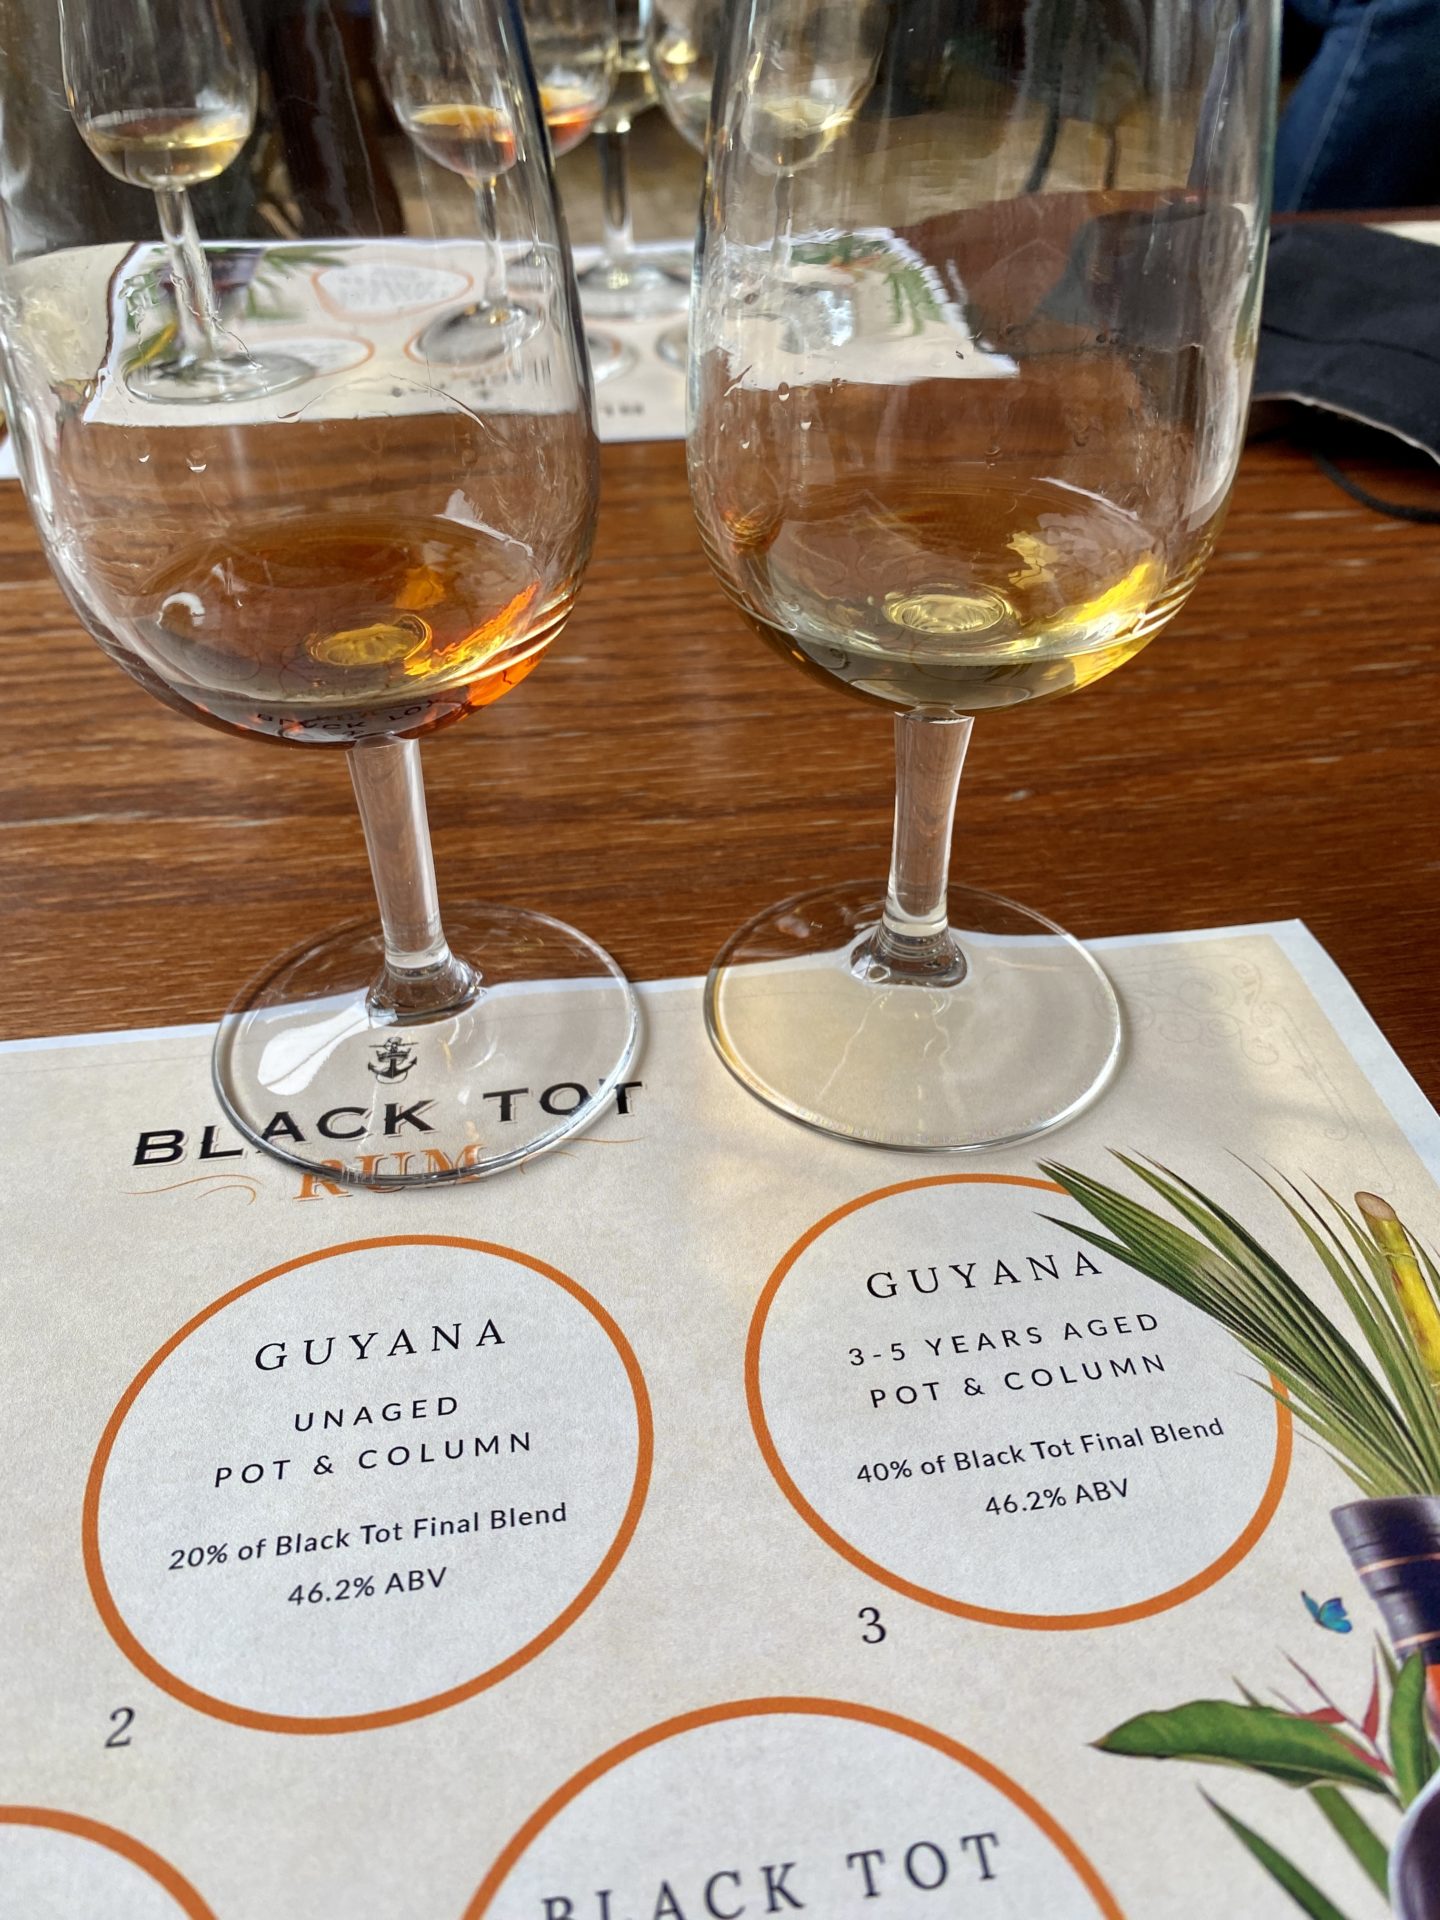 Black tot rum Guyana 